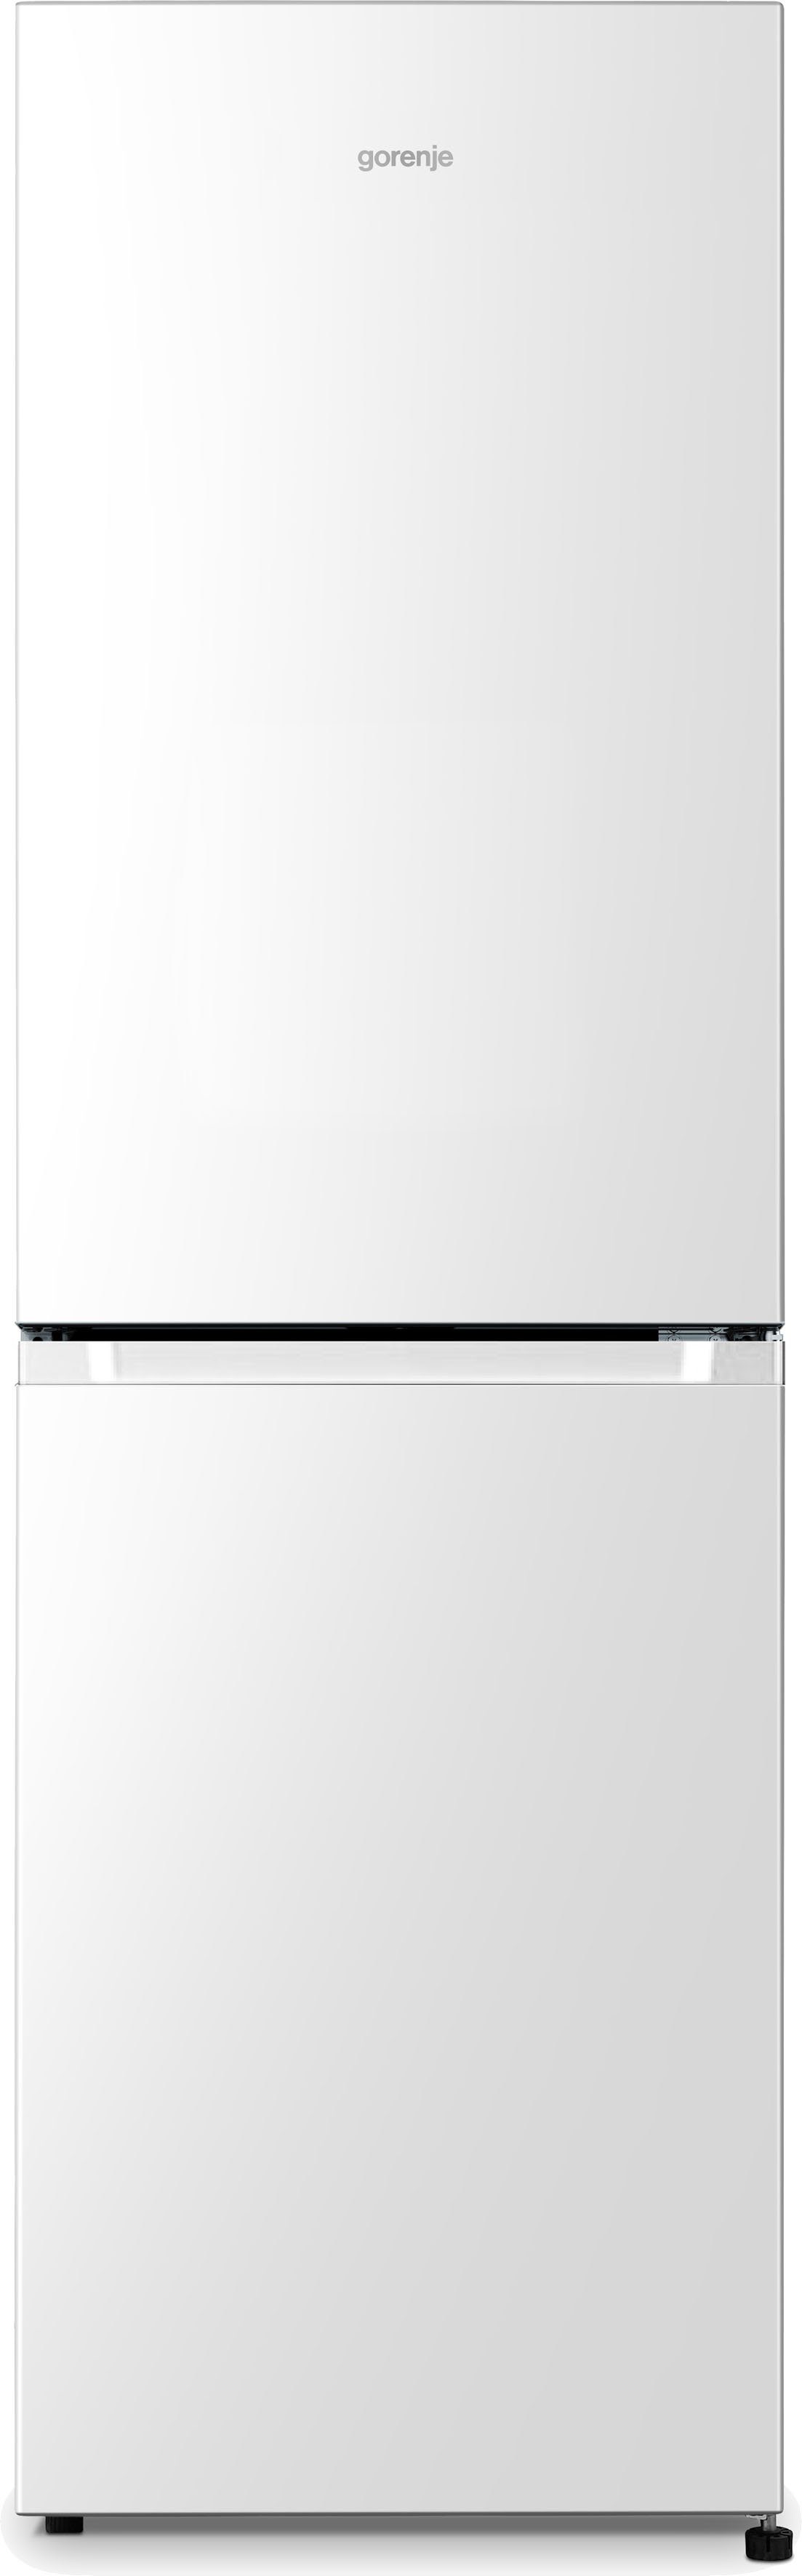 OTTO Gorenje | kaufen Kühlschränke Weiße online